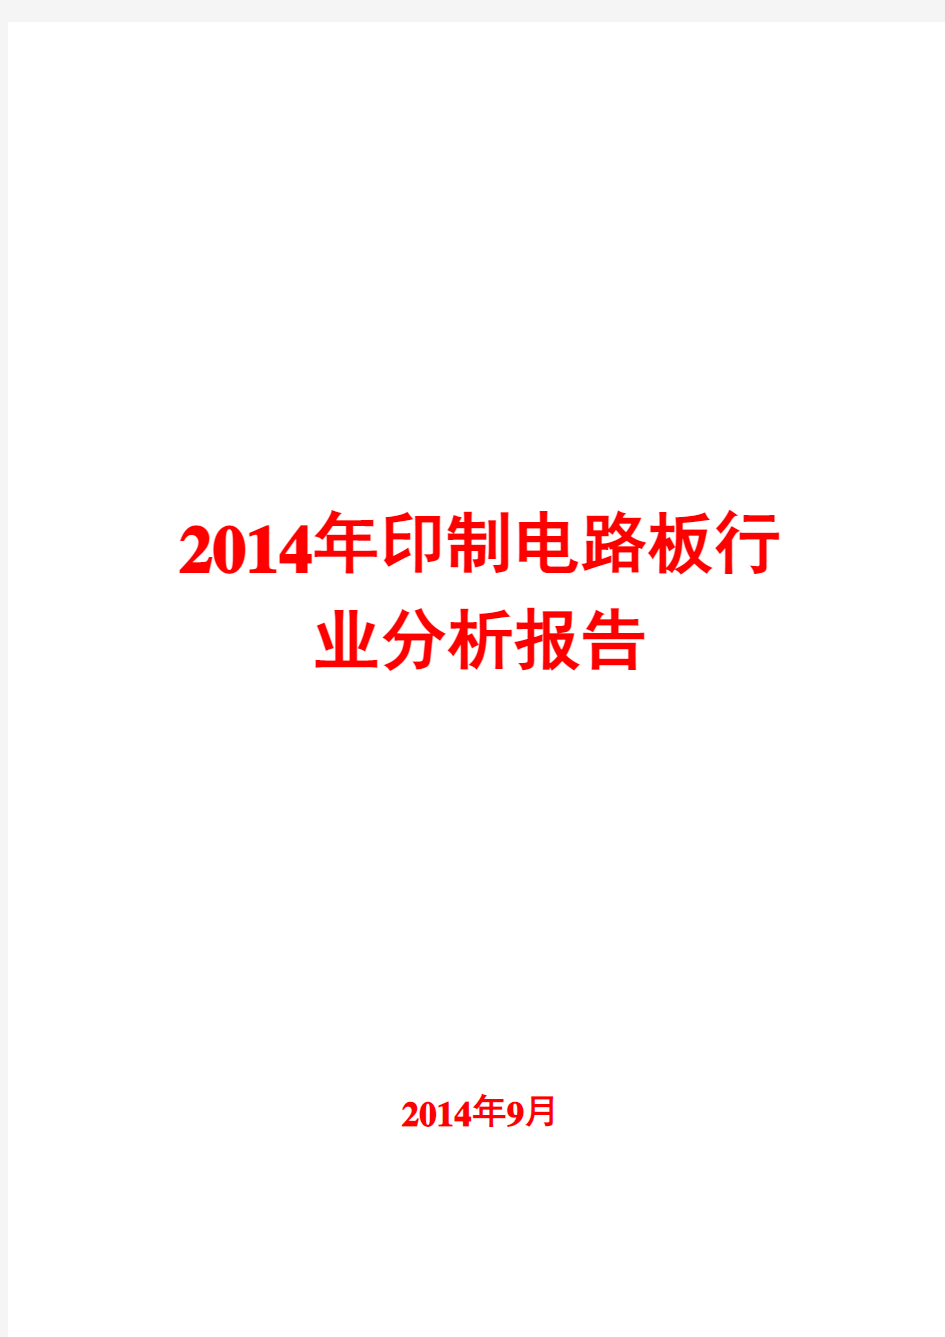 2014年印制电路板行业分析报告